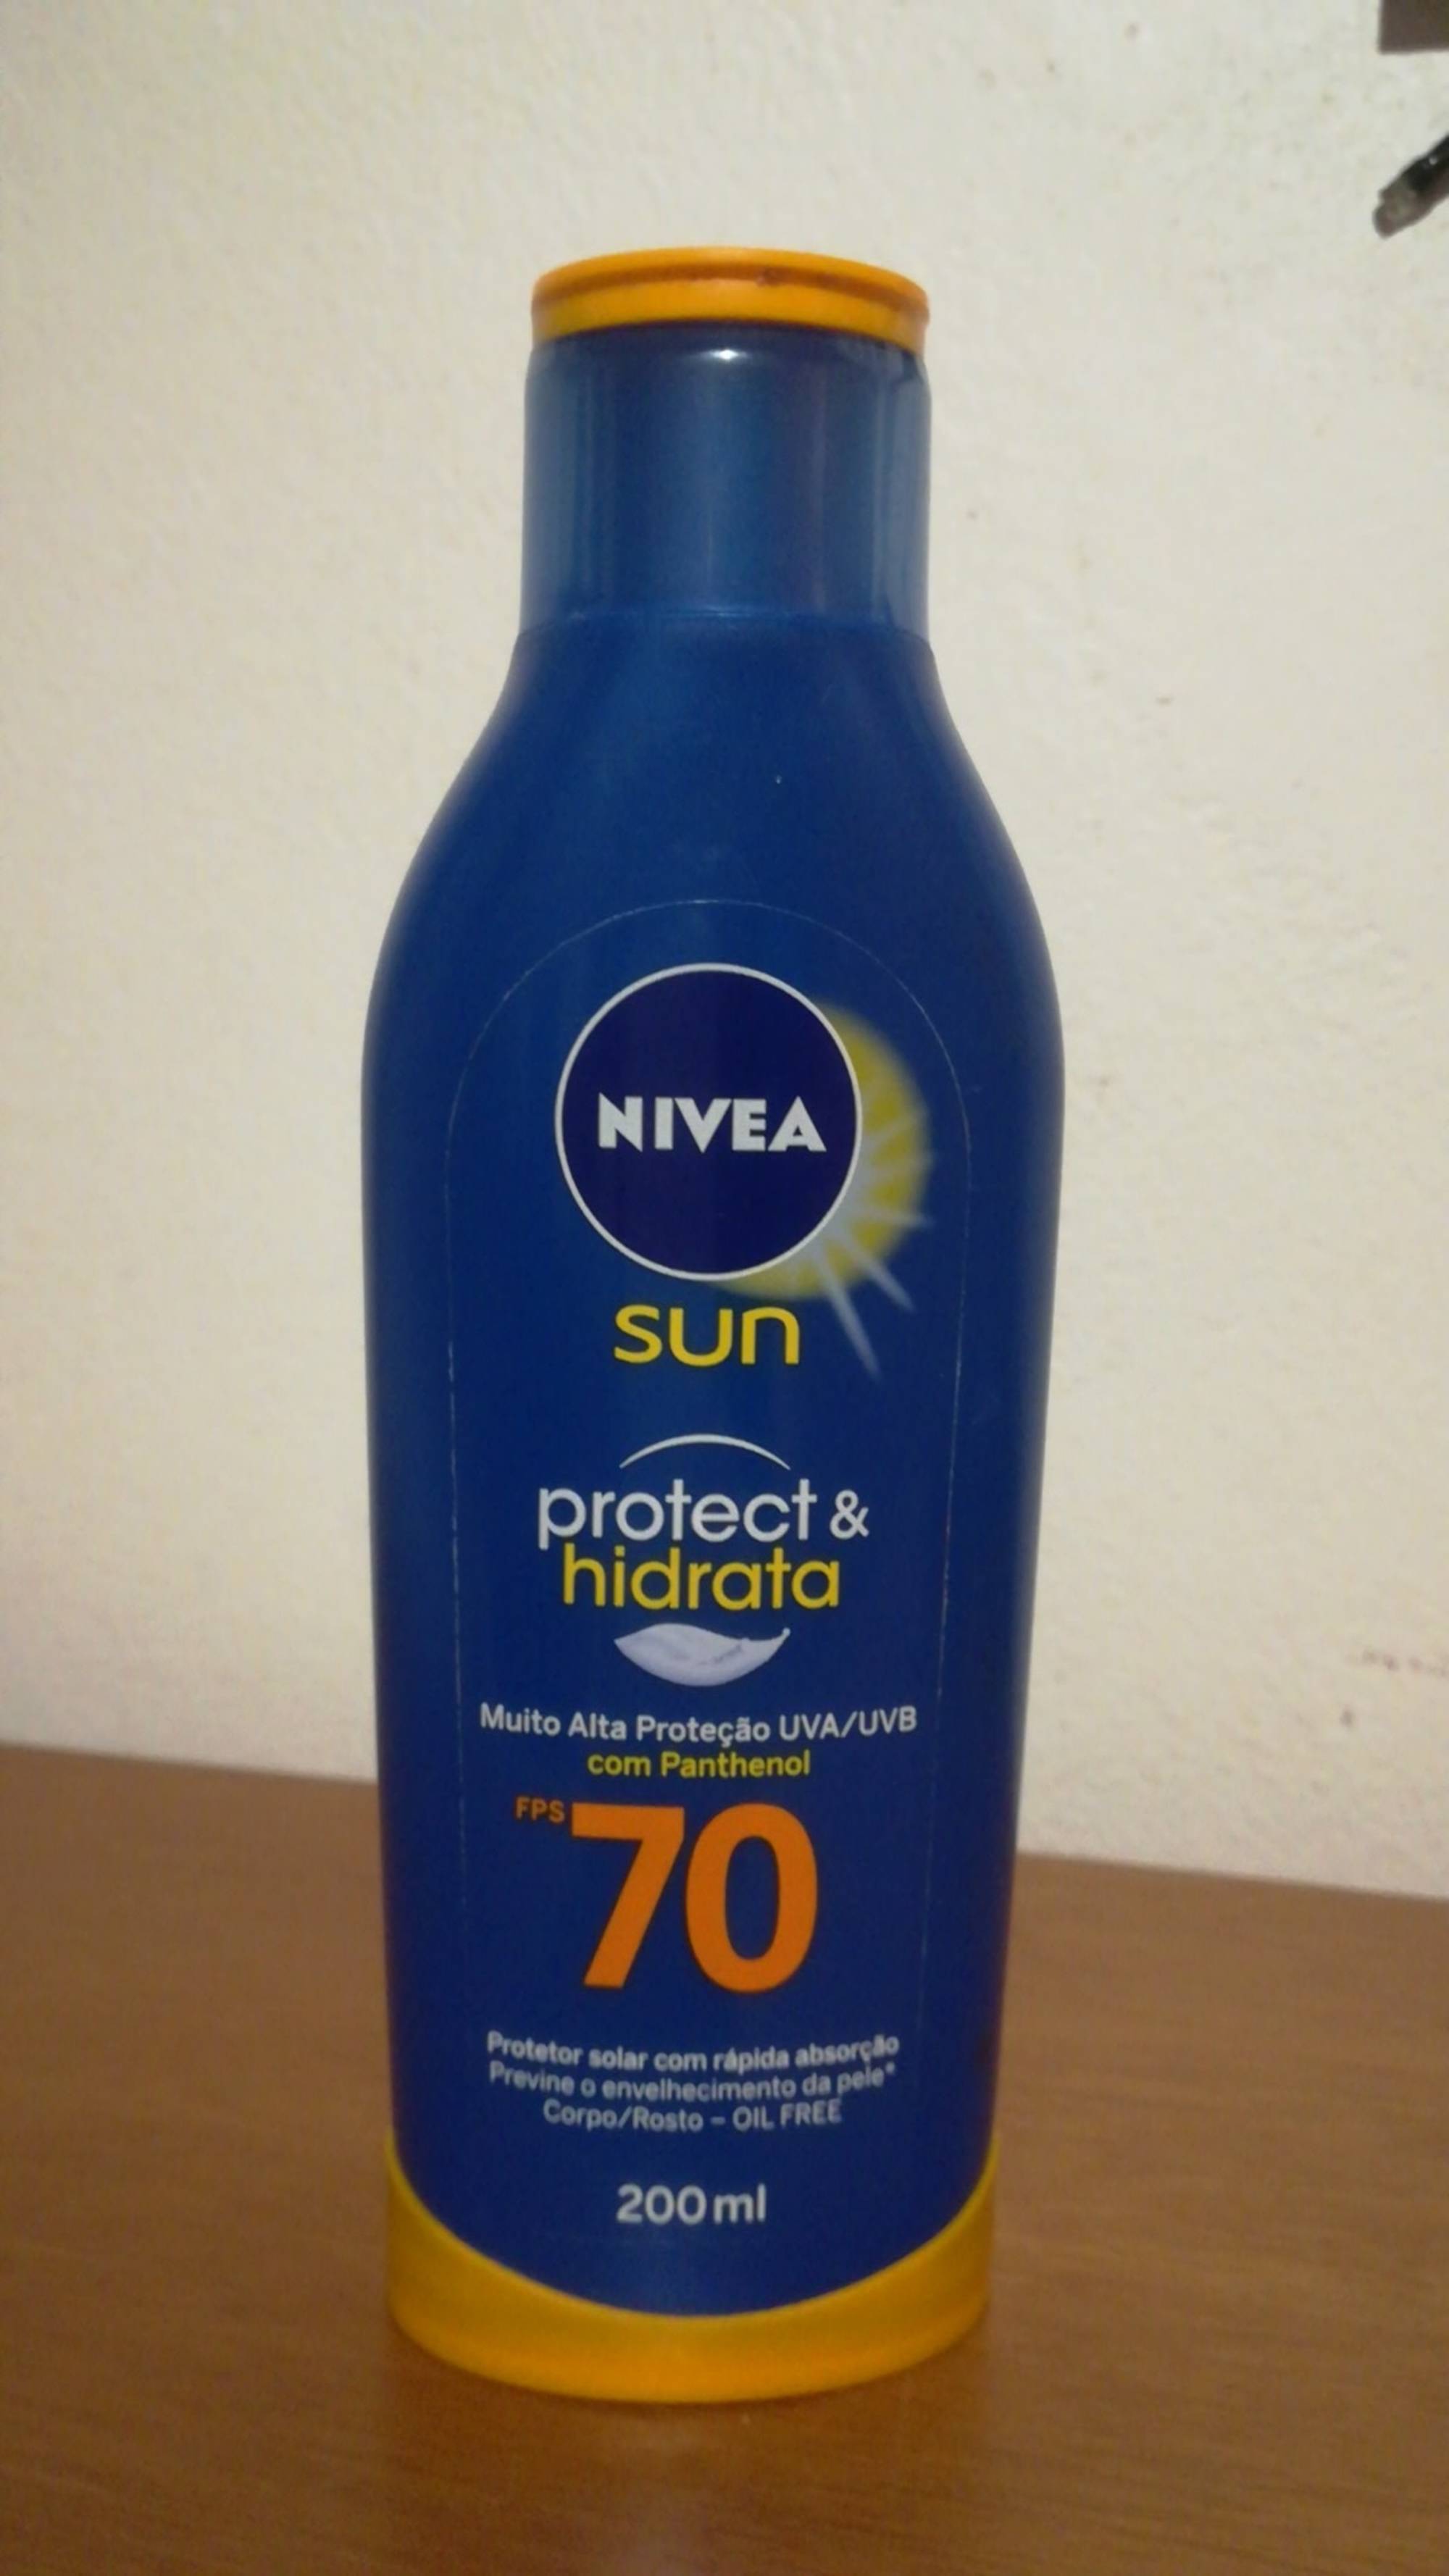 NIVEA - Sun protect & hydrata FPS 70